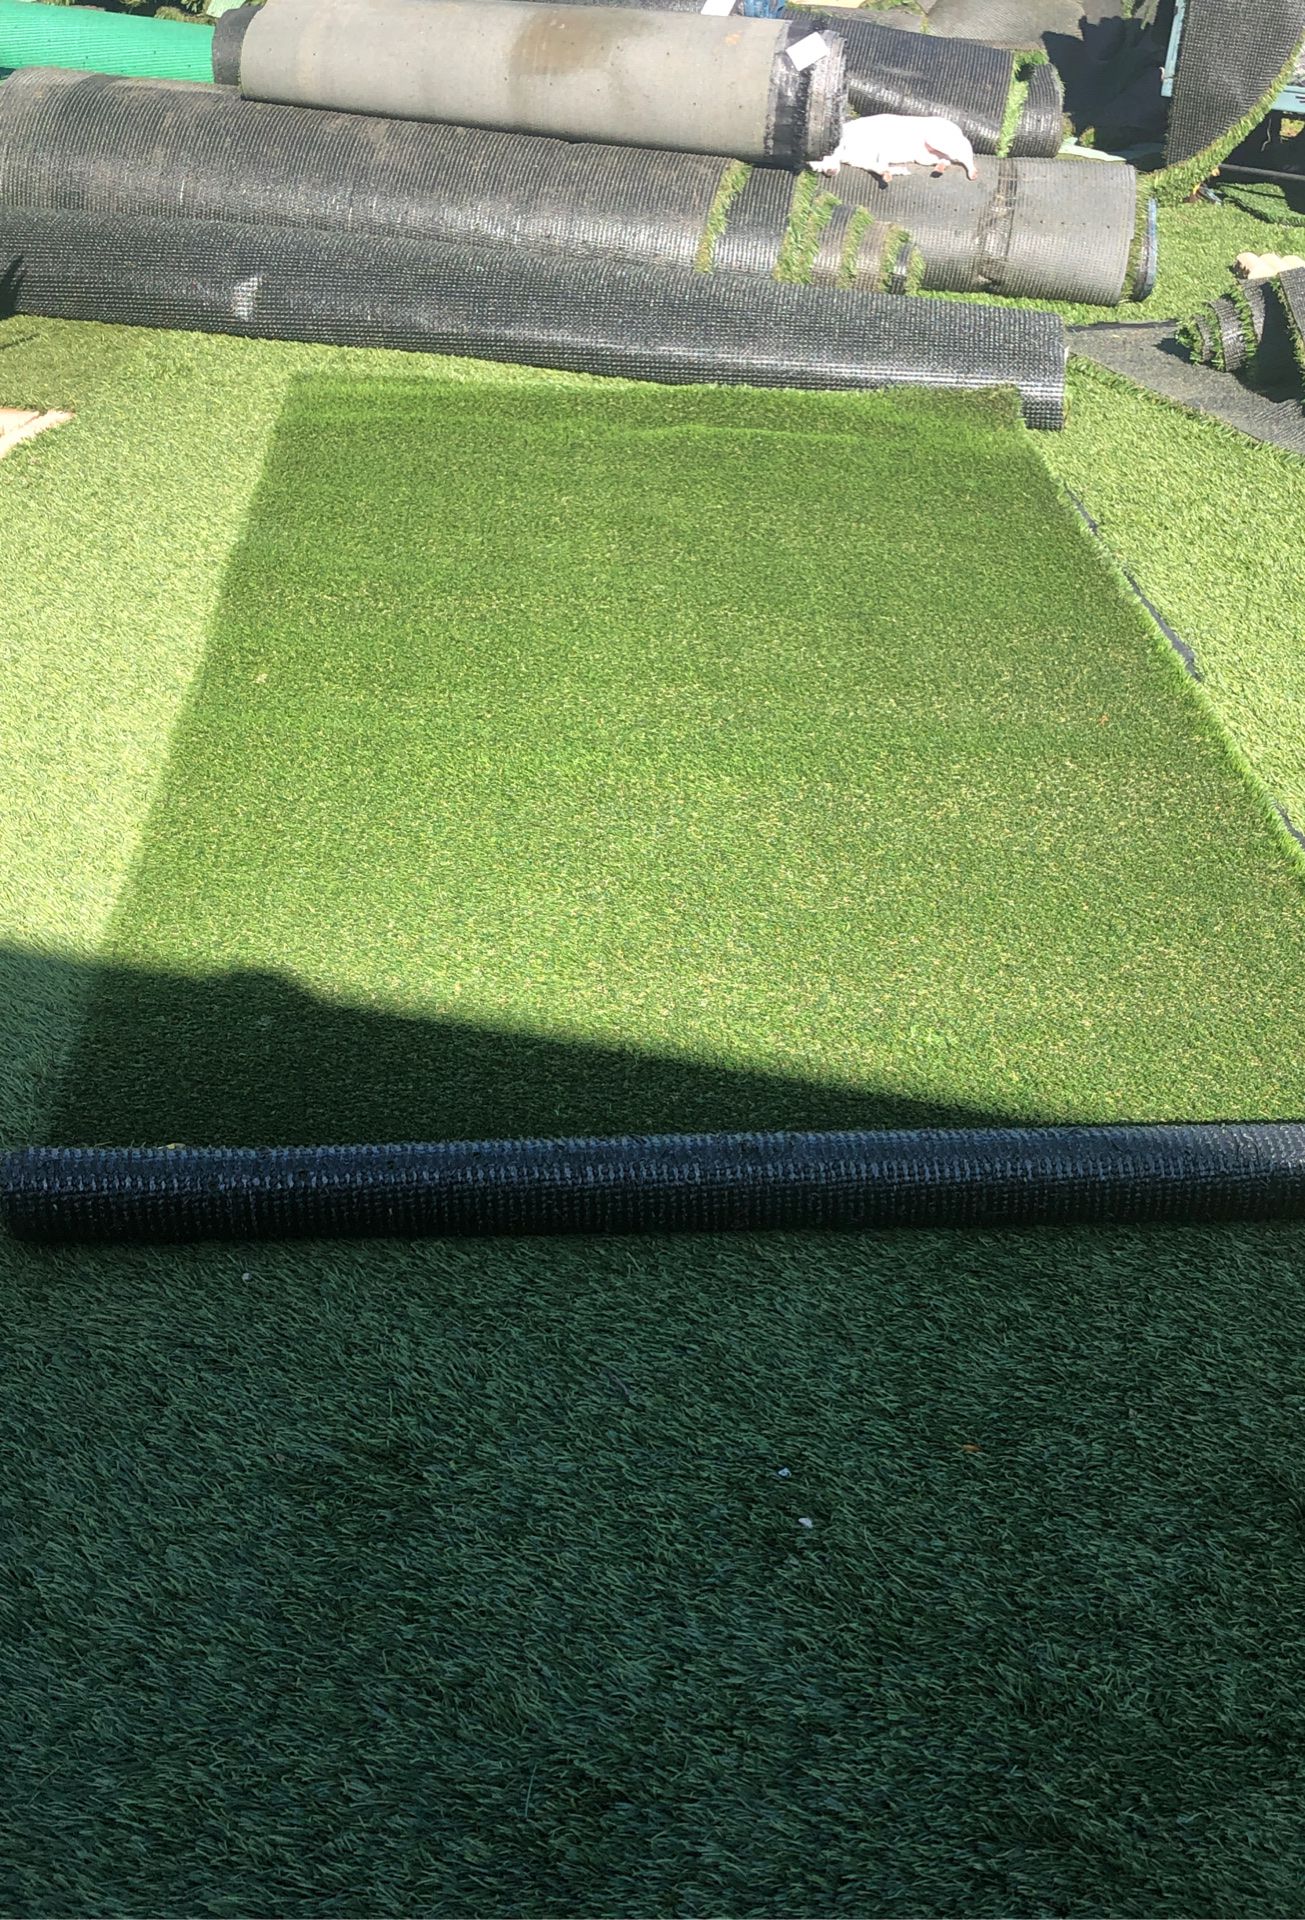 Artificial grass 9’x4.5 price $ 55 pet turf